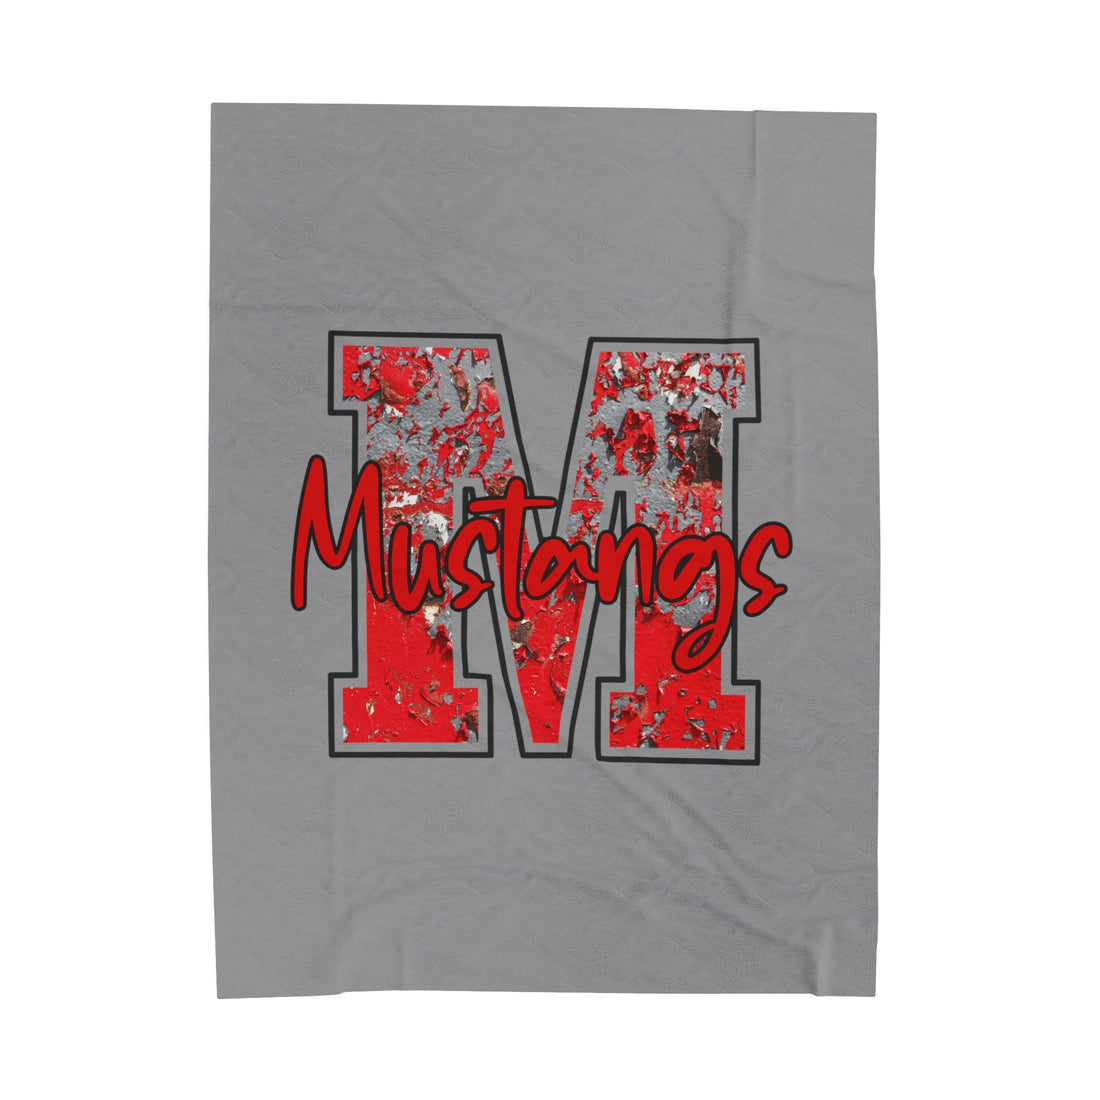 M Mustangs Velveteen Plush Blanket - All Over Prints - Positively Sassy - M Mustangs Velveteen Plush Blanket